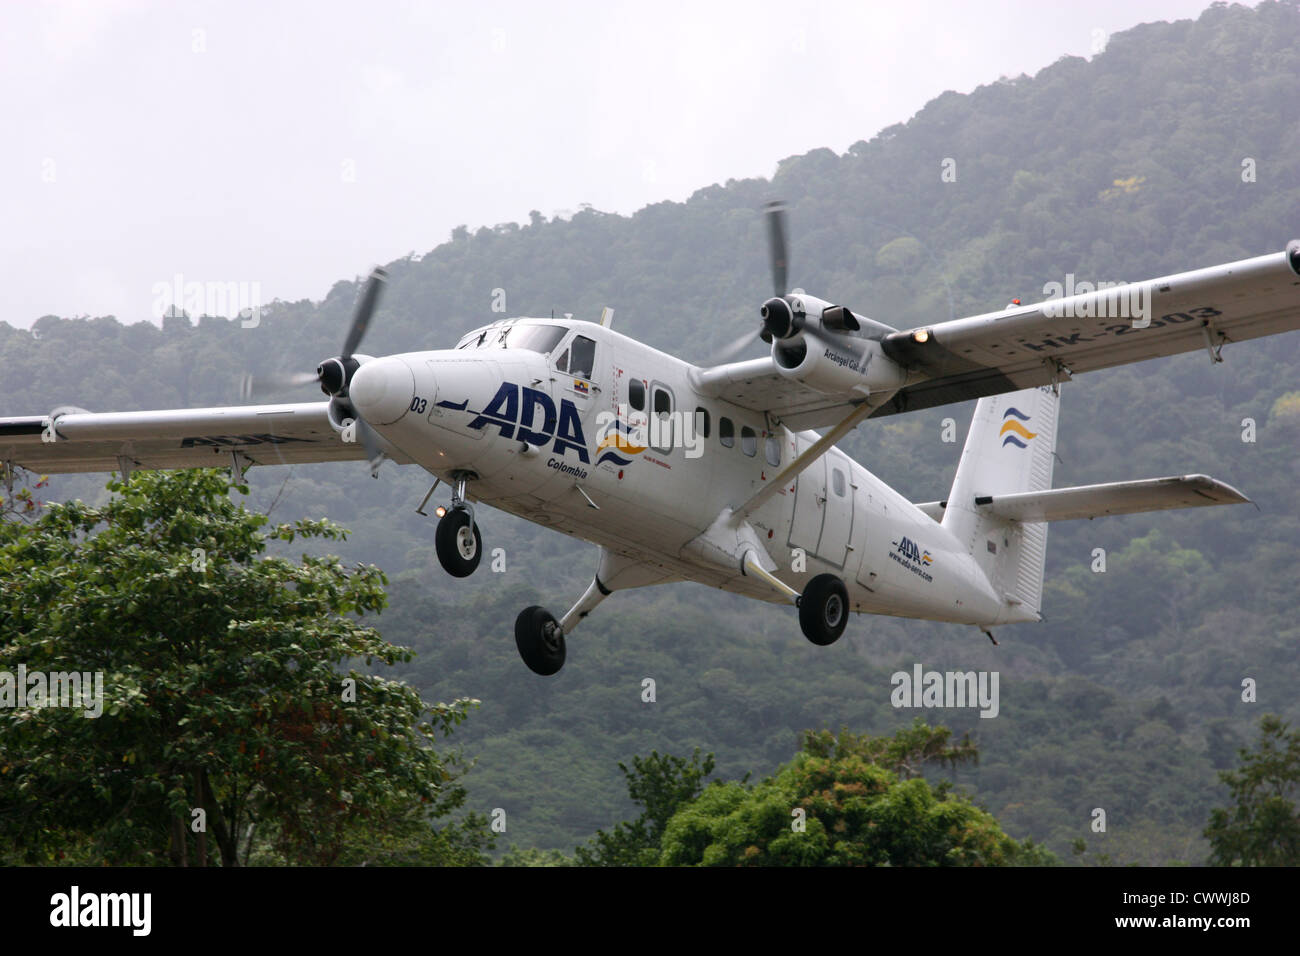 Twin Otter avion de passagers décolle à l'atterrissage près de jungle Capurgana, Colombie, Amérique du Sud Banque D'Images